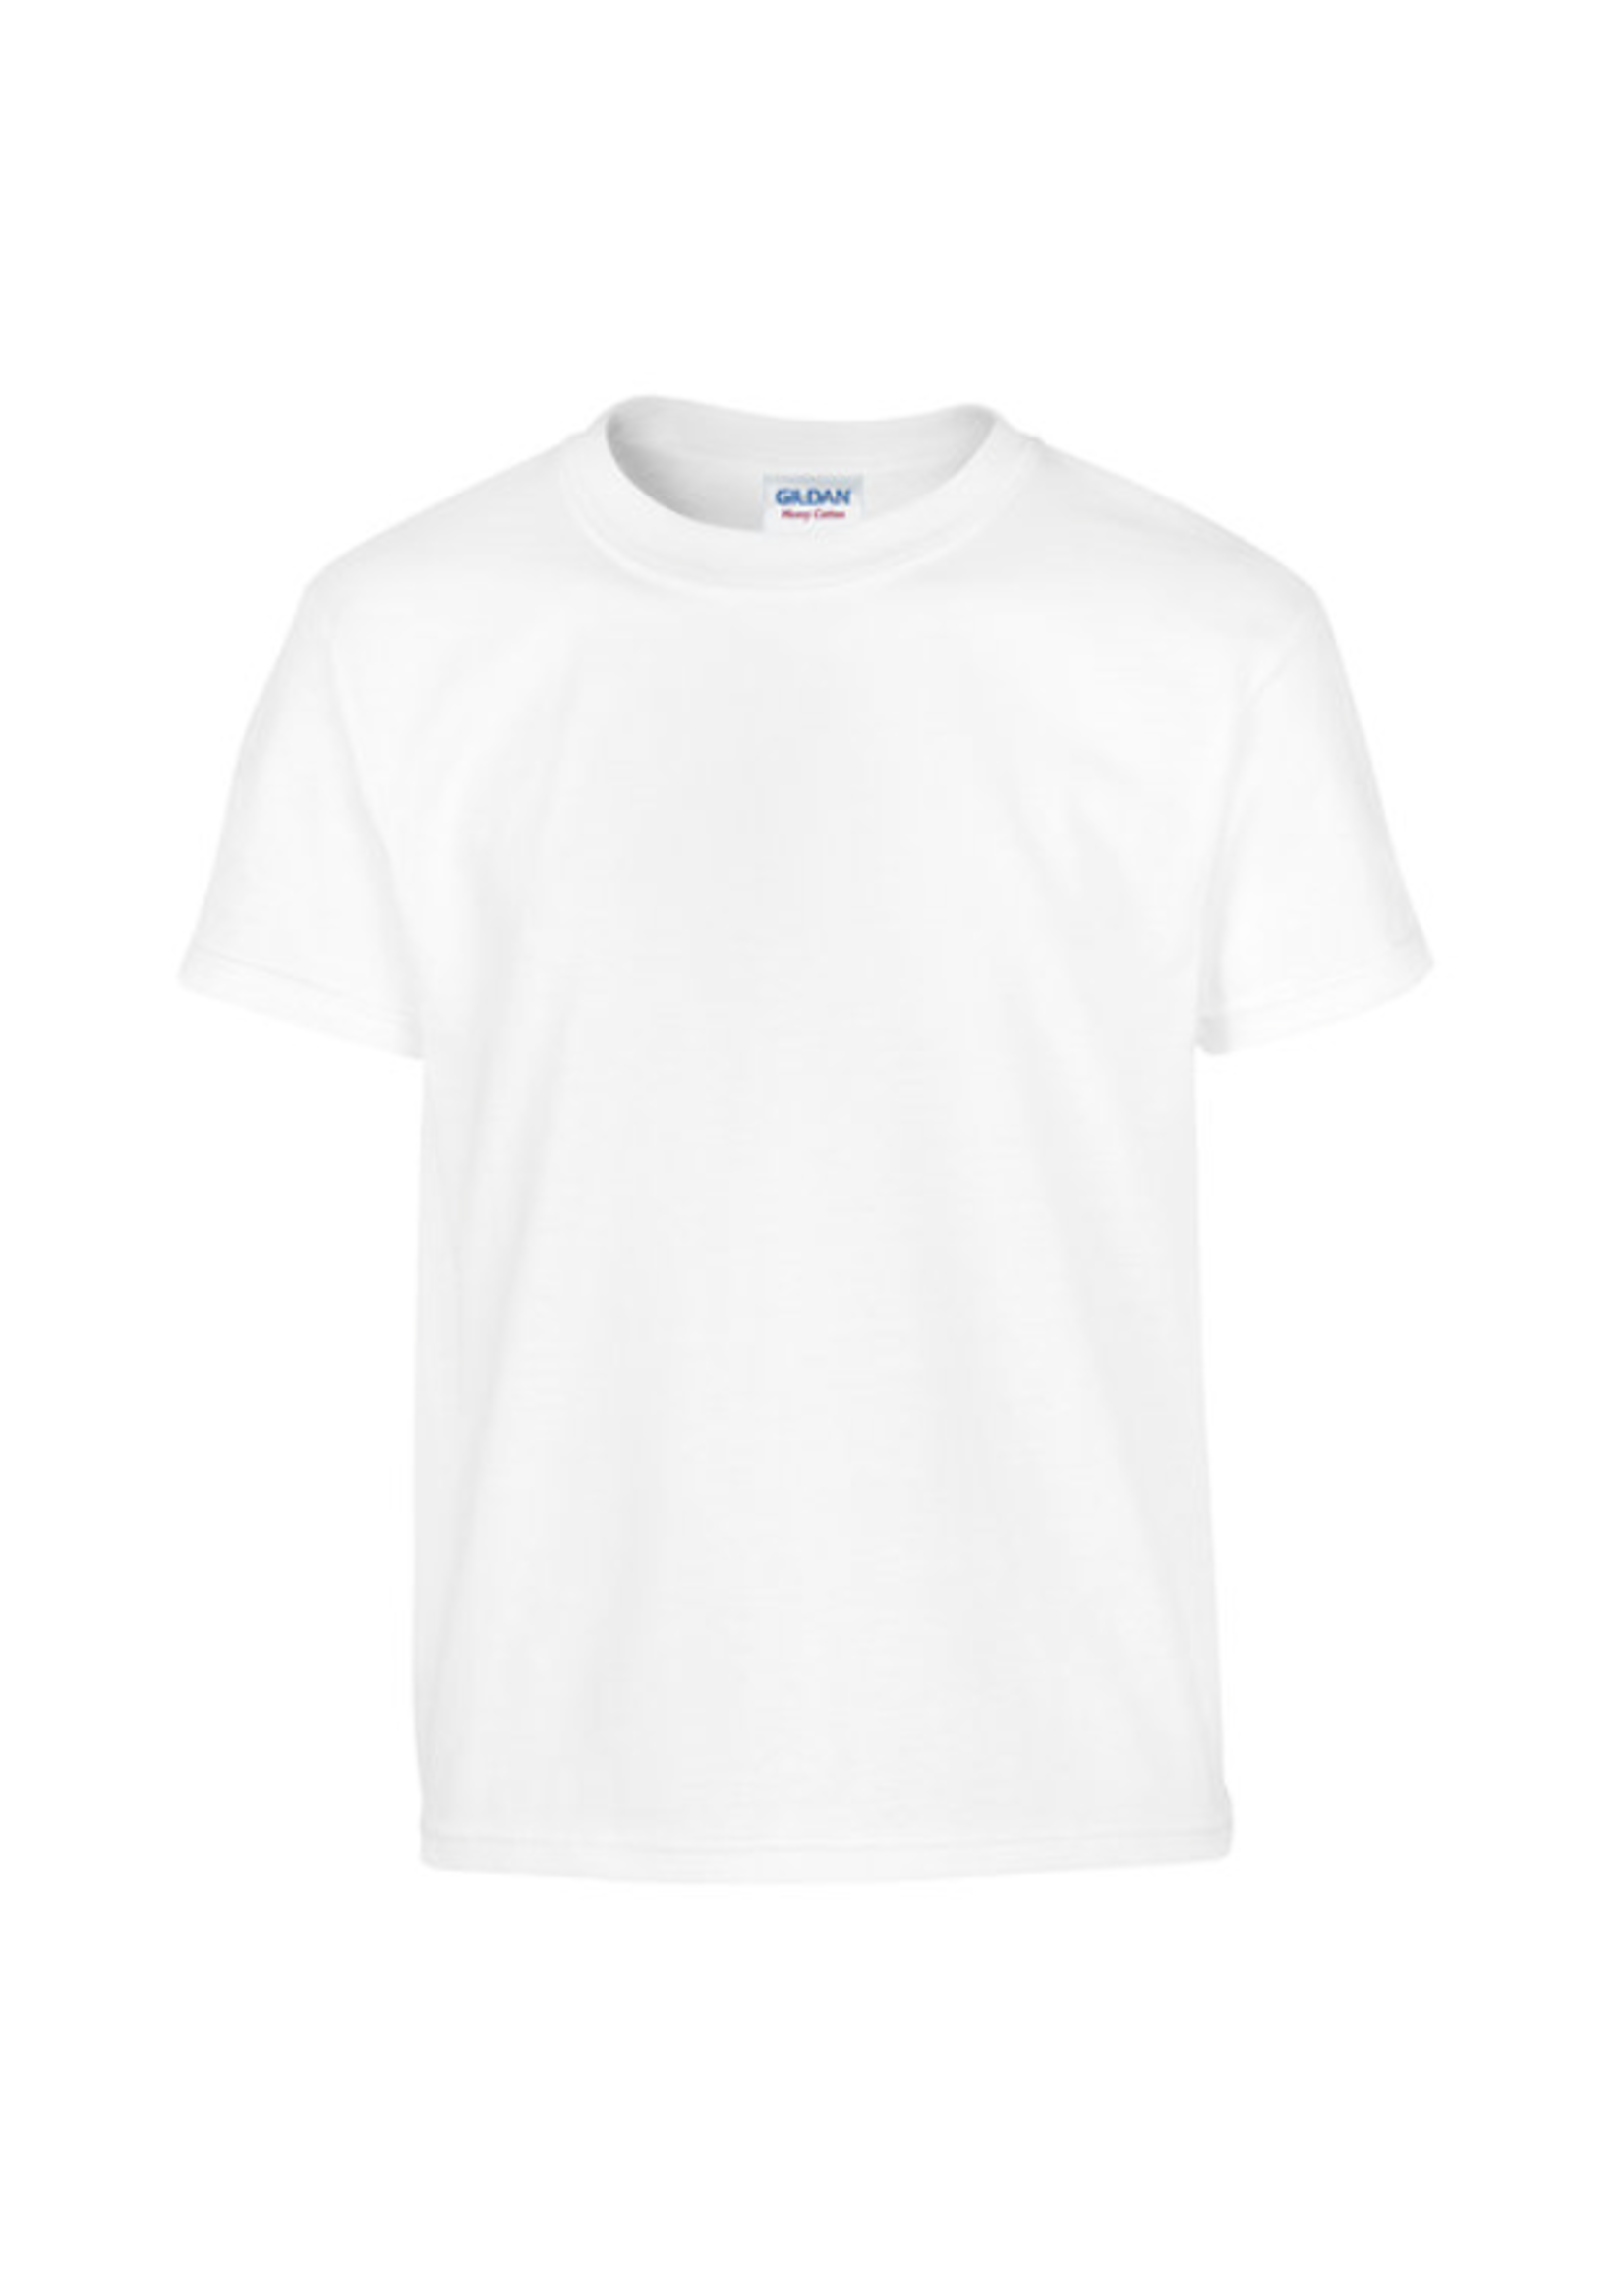 NON-UNIFORM SJB - Spirit Shirt, Unisex